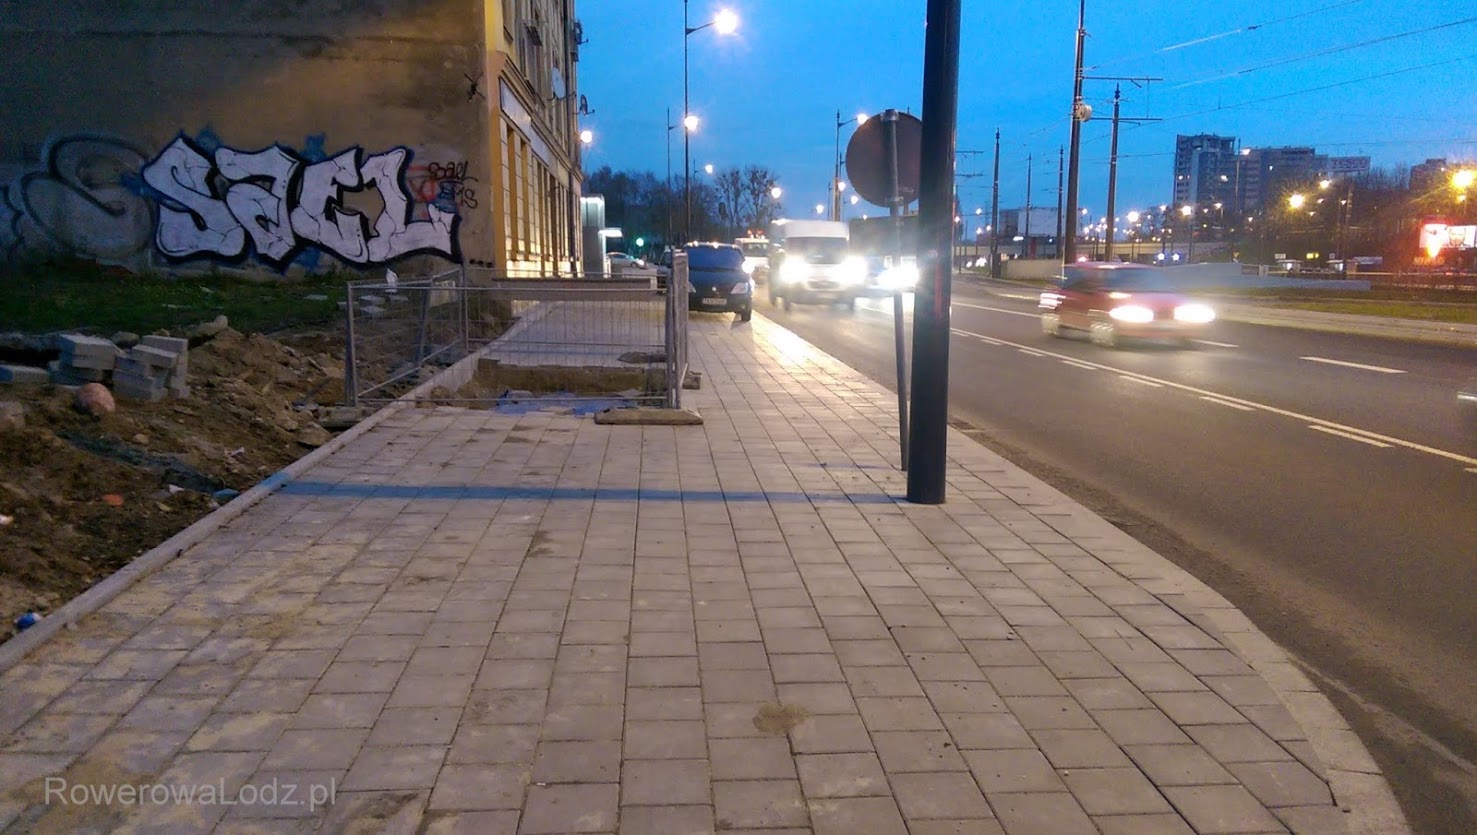 Może ktoś uznał, że to za mała przestrzeń aby zbudować drogę dla rowerów?